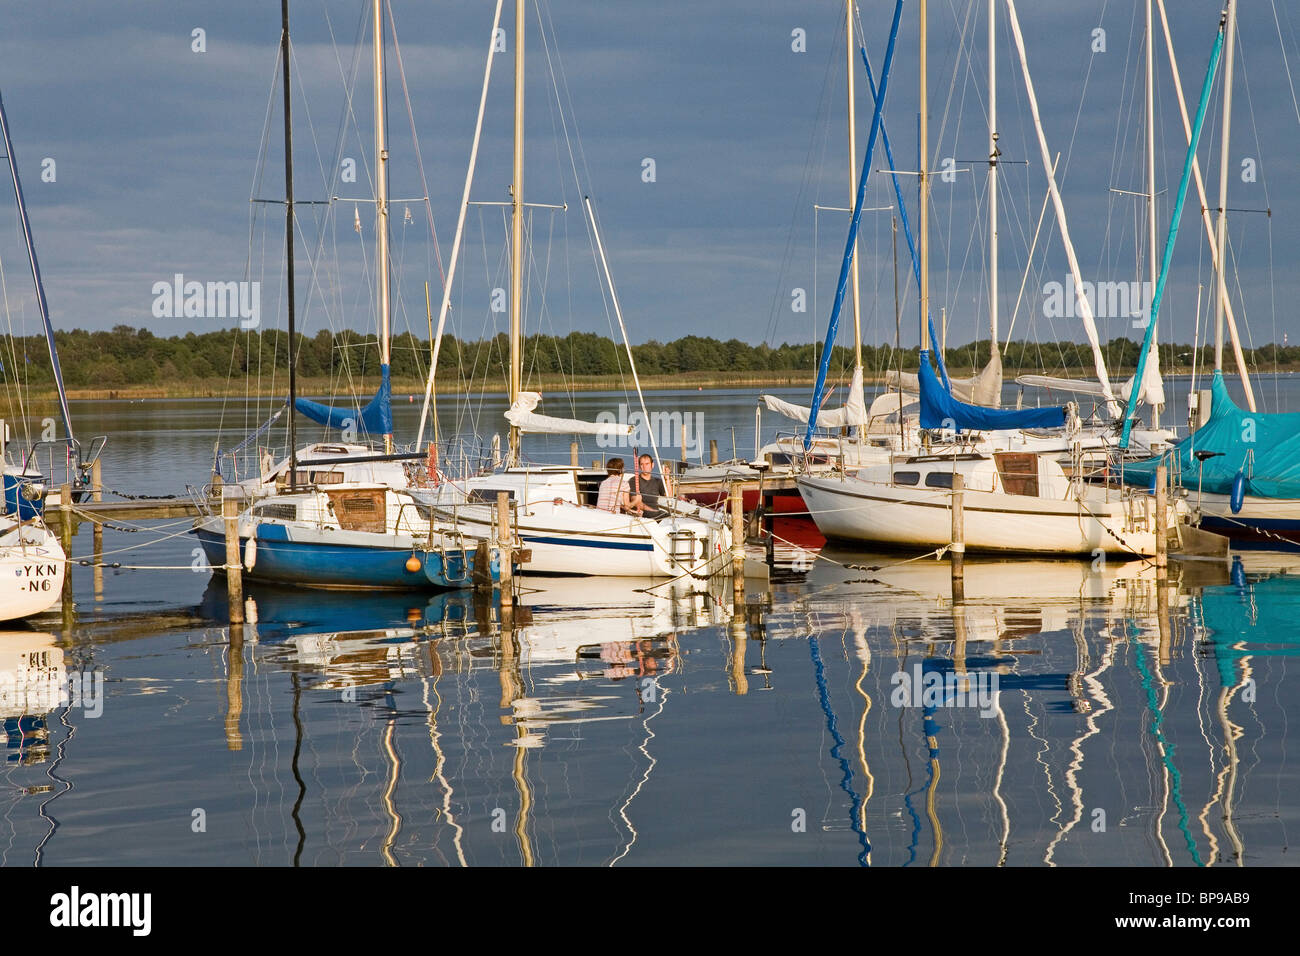 Yachts amarrés, lac Steinhuder réflexions, Basse-Saxe, Allemagne Banque D'Images